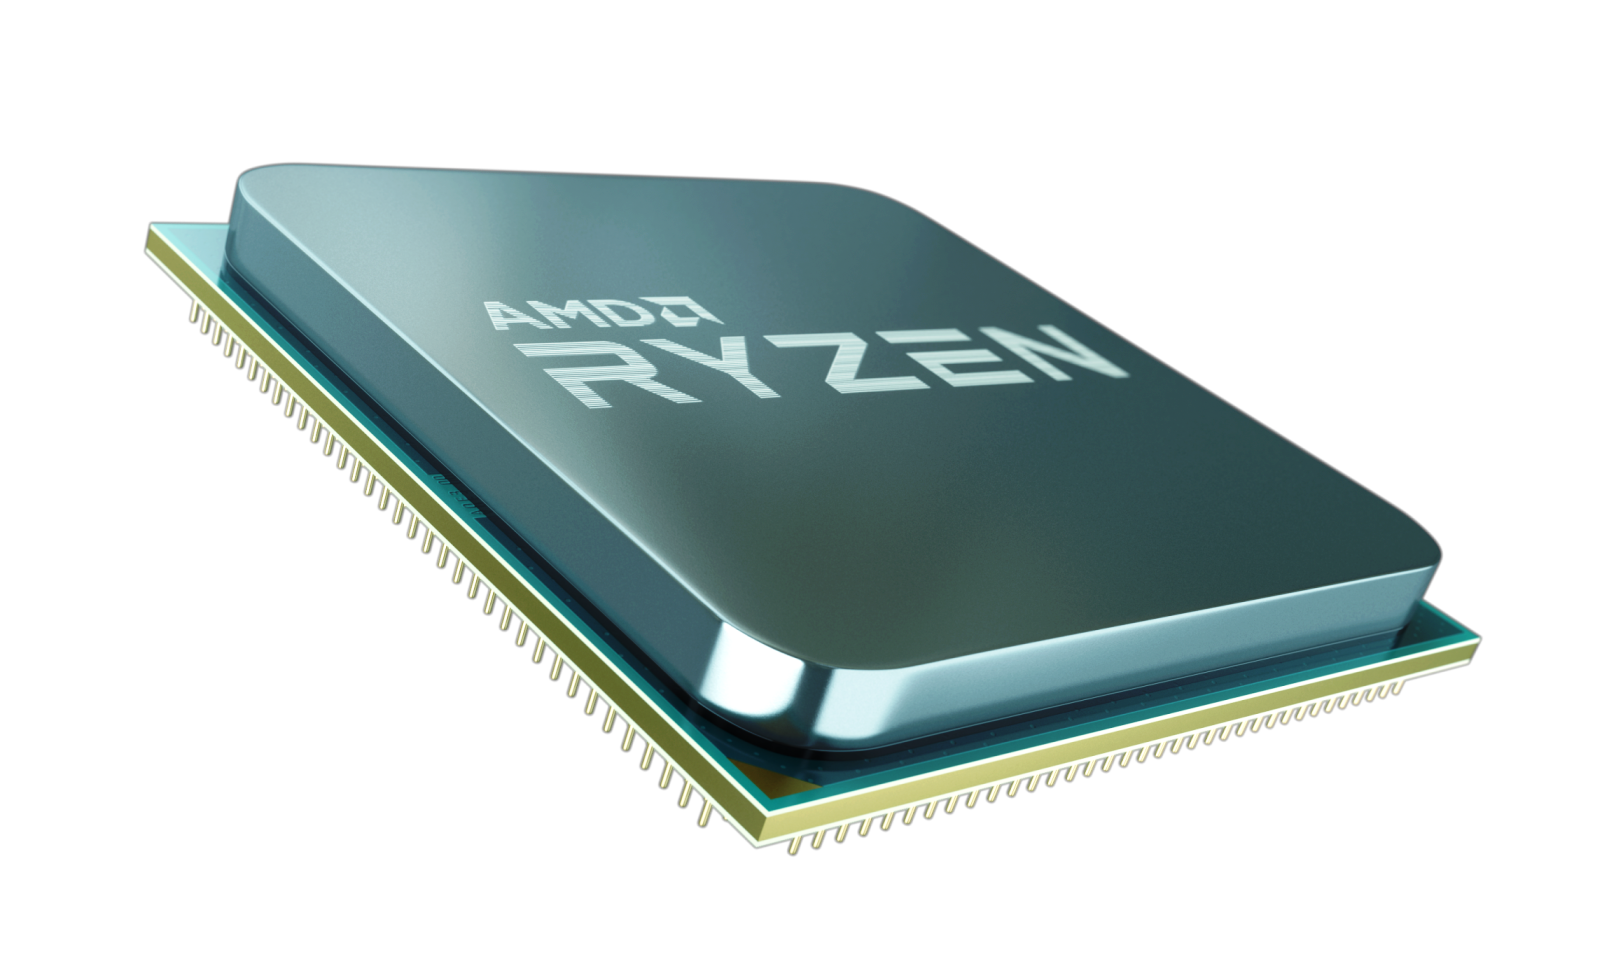 ryzen chip 2 ครั้งแรกของ AMD Ryzen Desktop APUs กับกราฟิกที่ทรงพลังที่สุดในโลกบนเดสก์ท็อปโปรเซสเซอร์1 พร้อมวางจำหน่ายทั่วโลกแล้ววันนี้